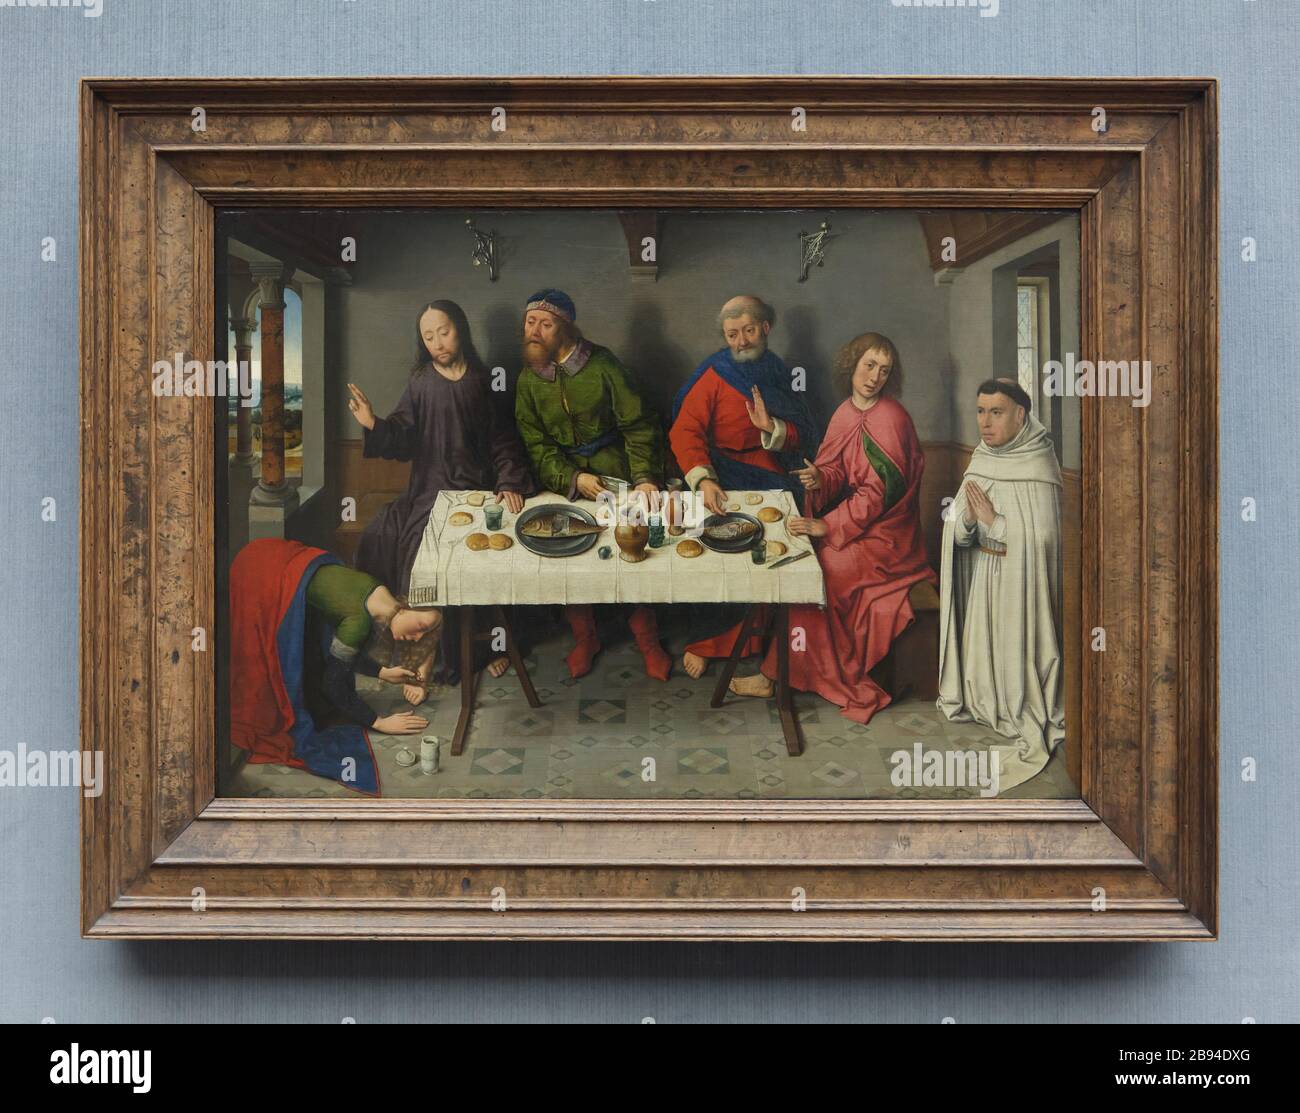 Gemälde „Christus im Haus des Simon“ des altniederländischen Renaissance-Malers Dieric Bouts / Dirk Bouts (1460) in der Berliner Gemäldegalerie in Berlin. Stockfoto